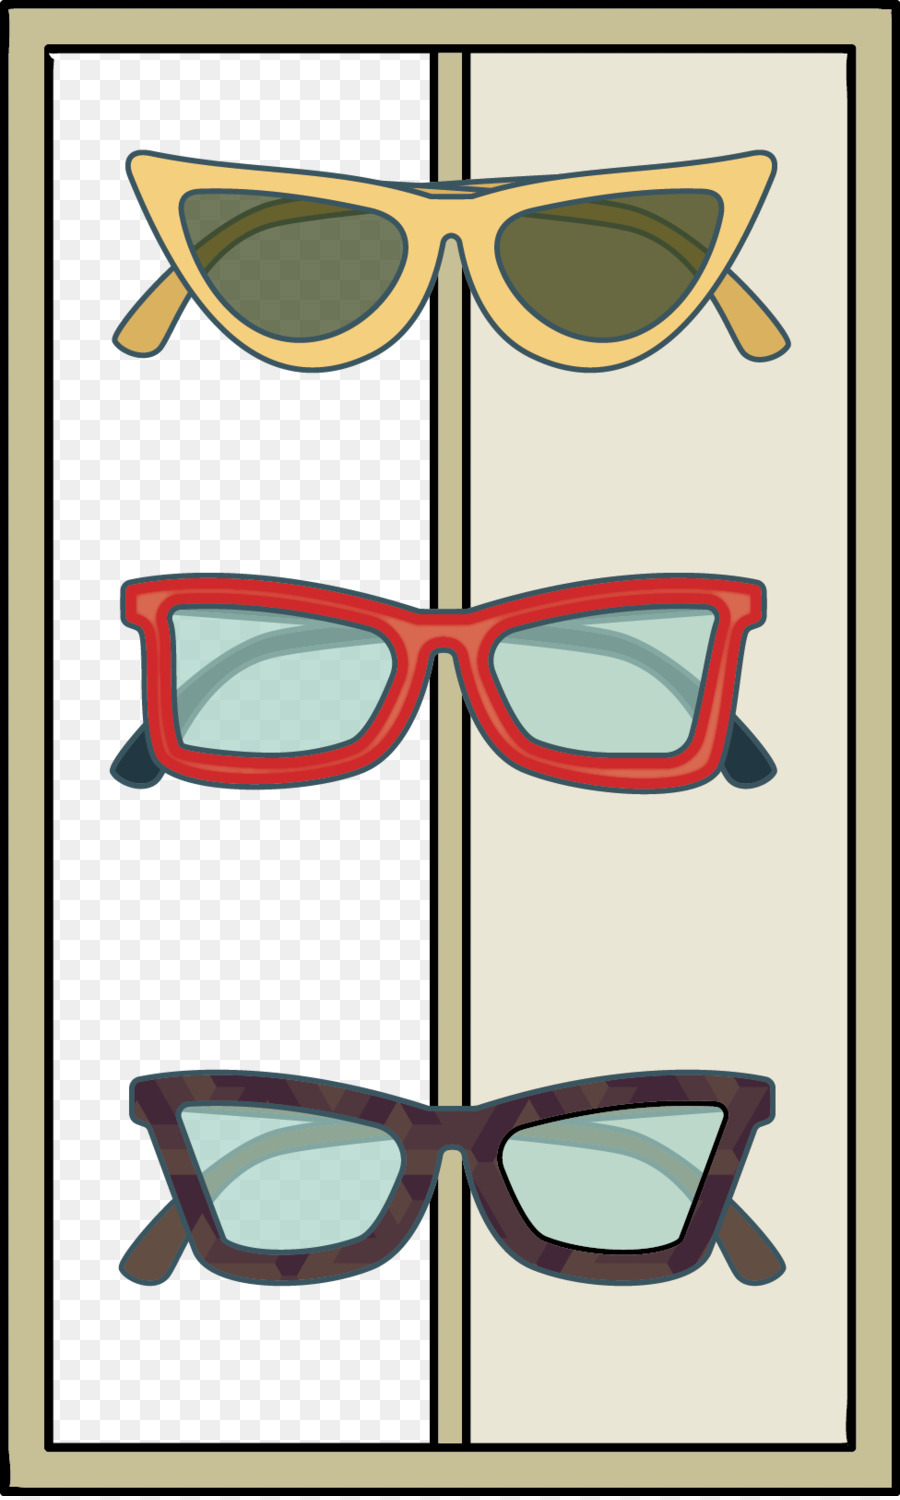 Occhiali da sole Clip art - vettore di occhiali da sole